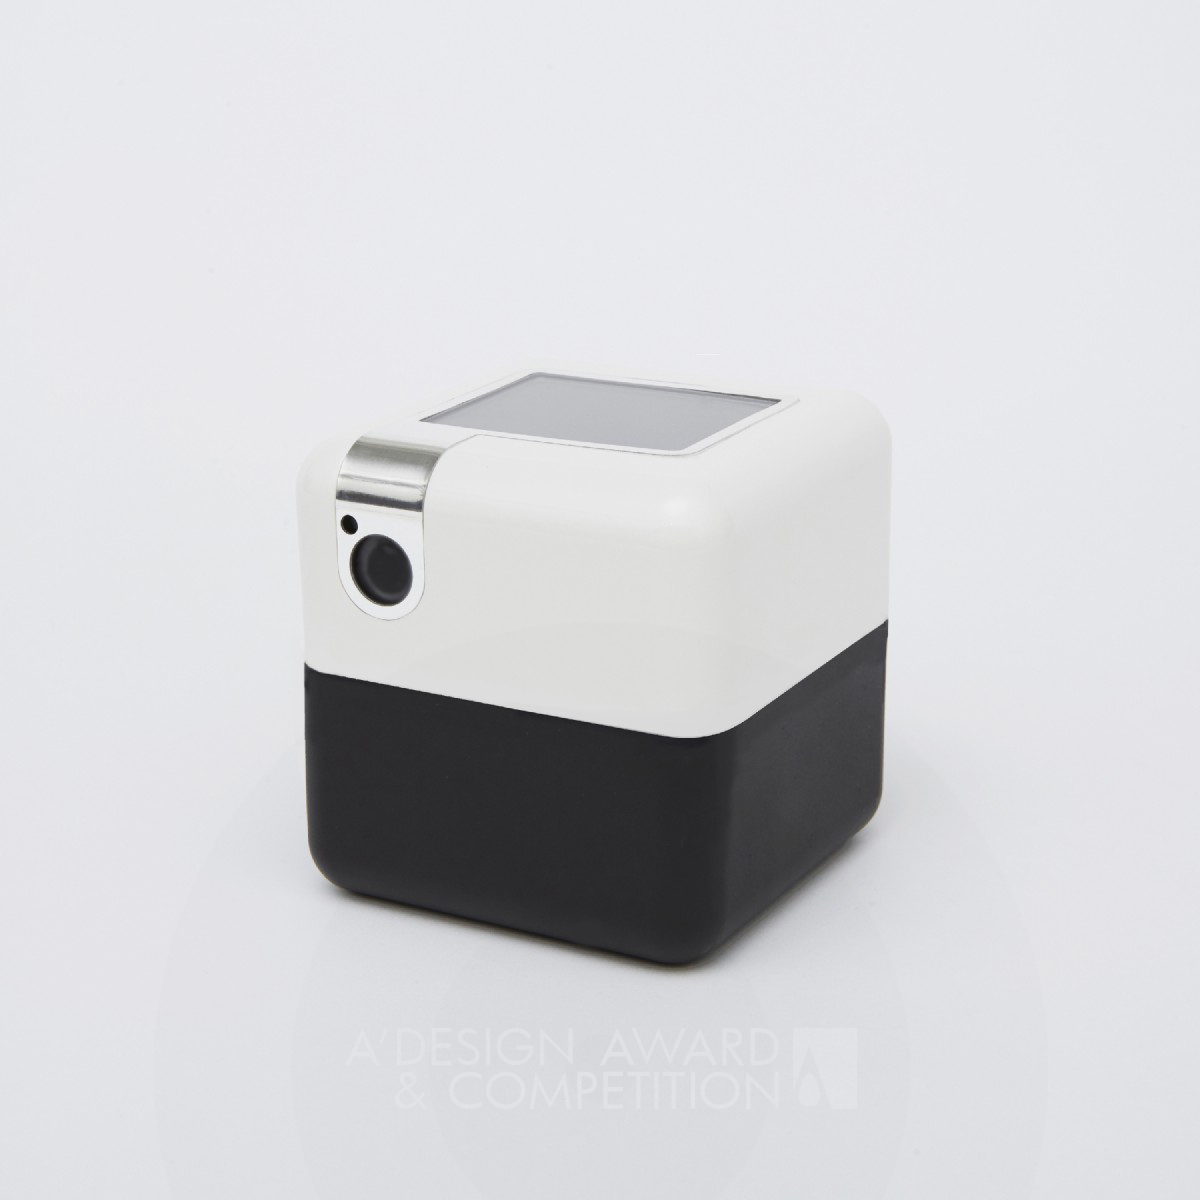 PLEN Cube Portable Assistant Robot